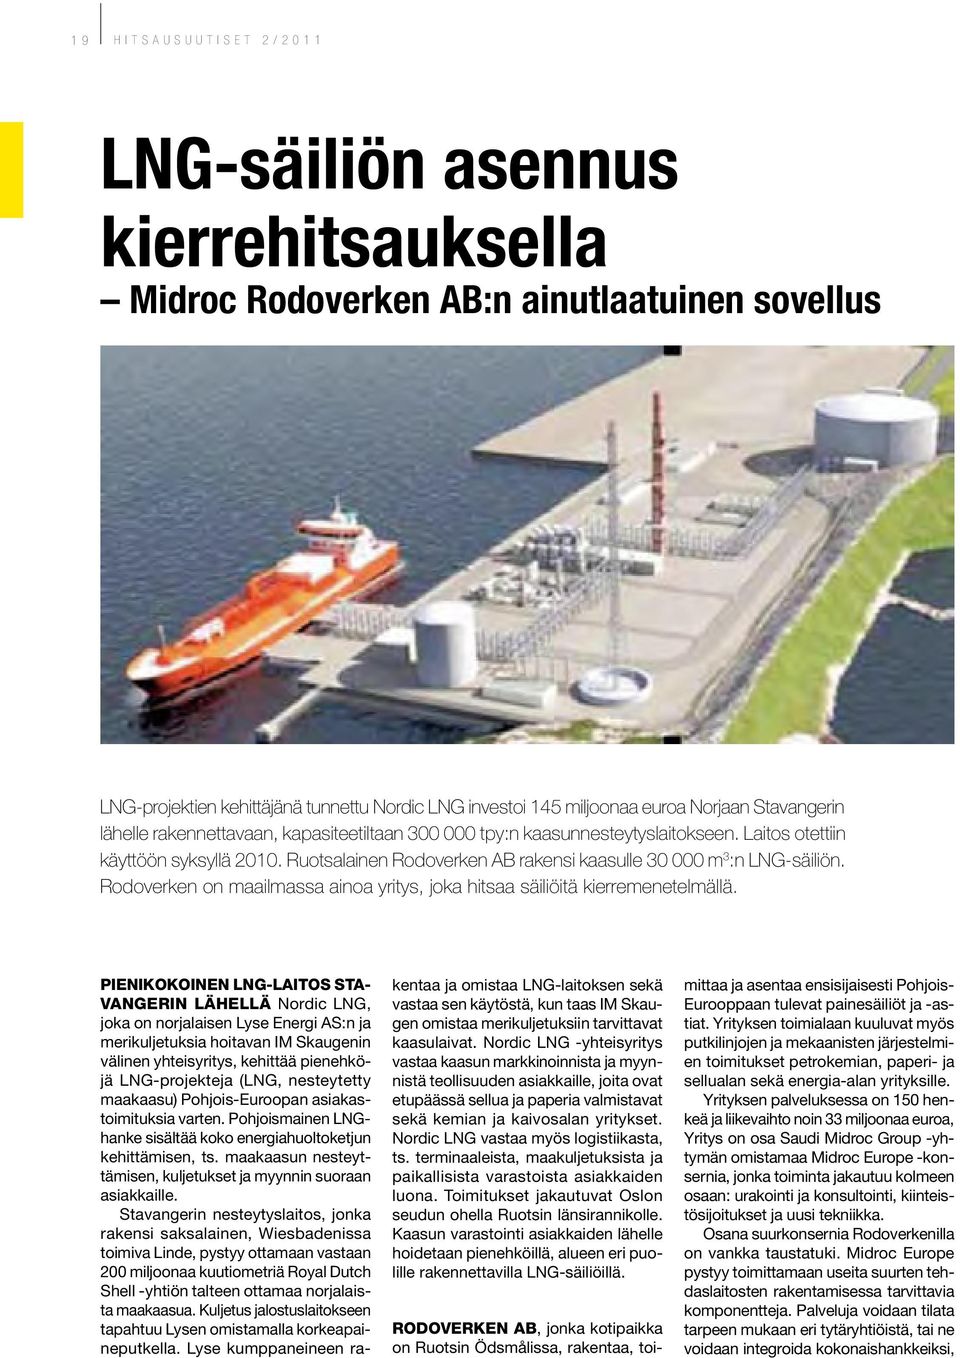 Ruotsalainen Rodoverken AB rakensi kaasulle 30 000 m 3 :n LNG-säiliön. Rodoverken on maailmassa ainoa yritys, joka hitsaa säiliöitä kierremenetelmällä.